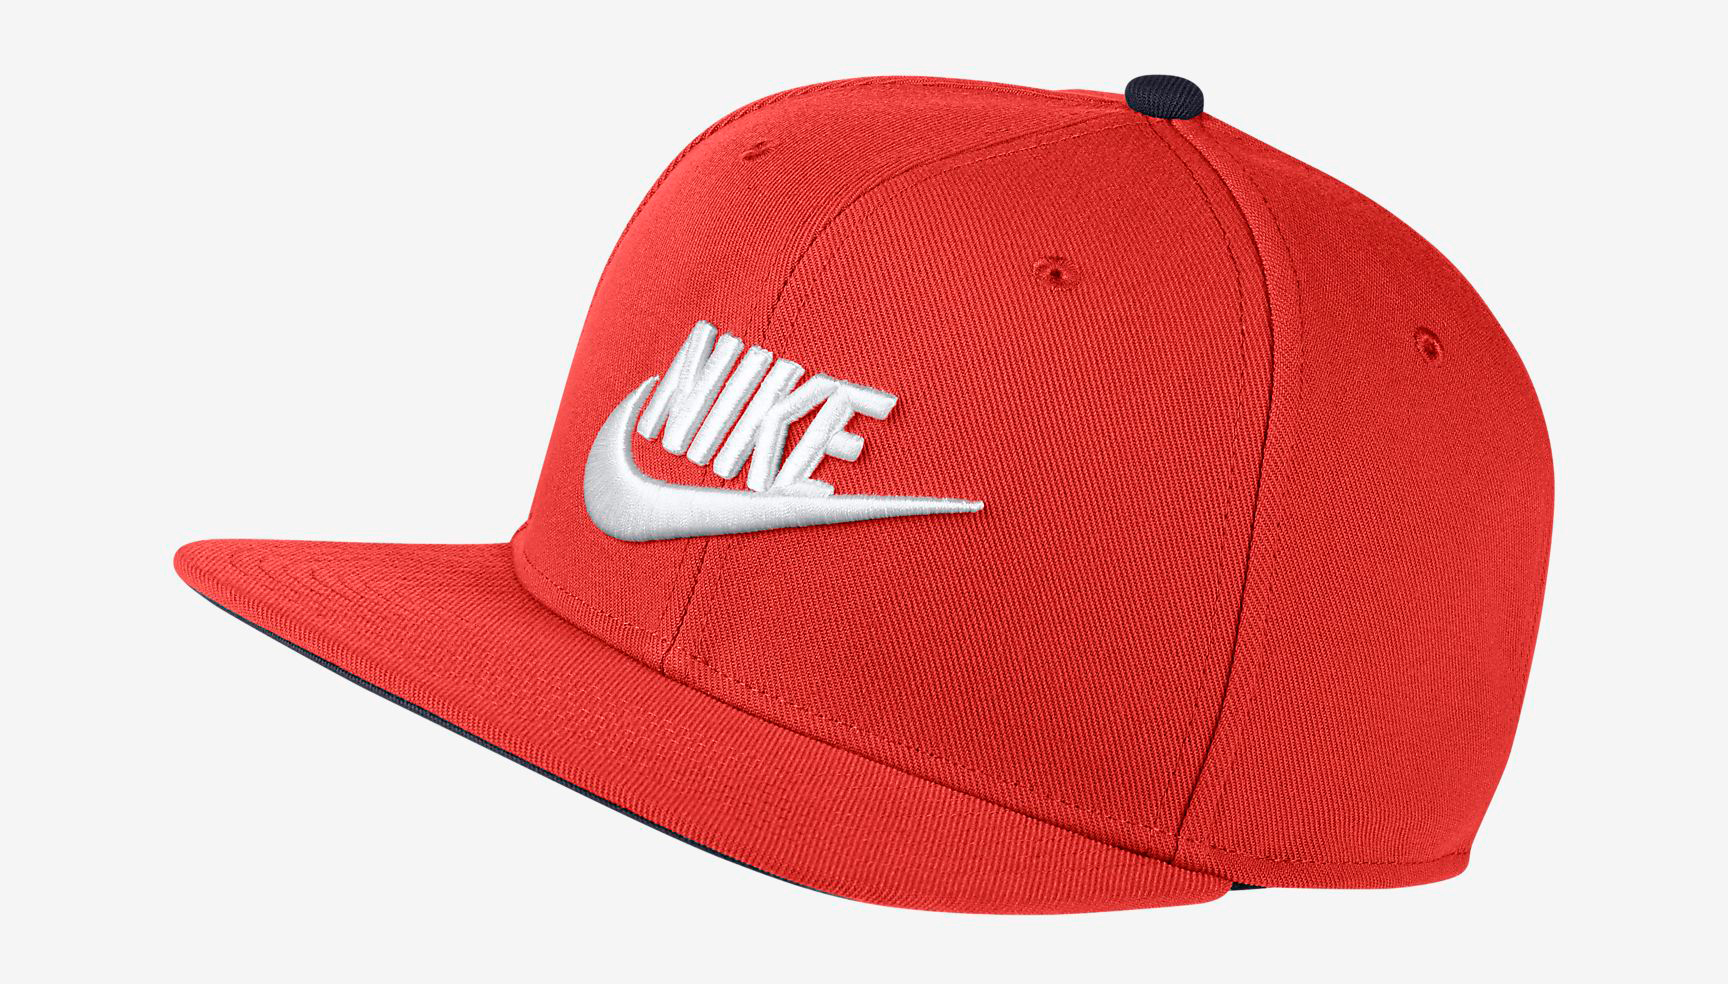 Nike Habanero Foamposite One Hats to 